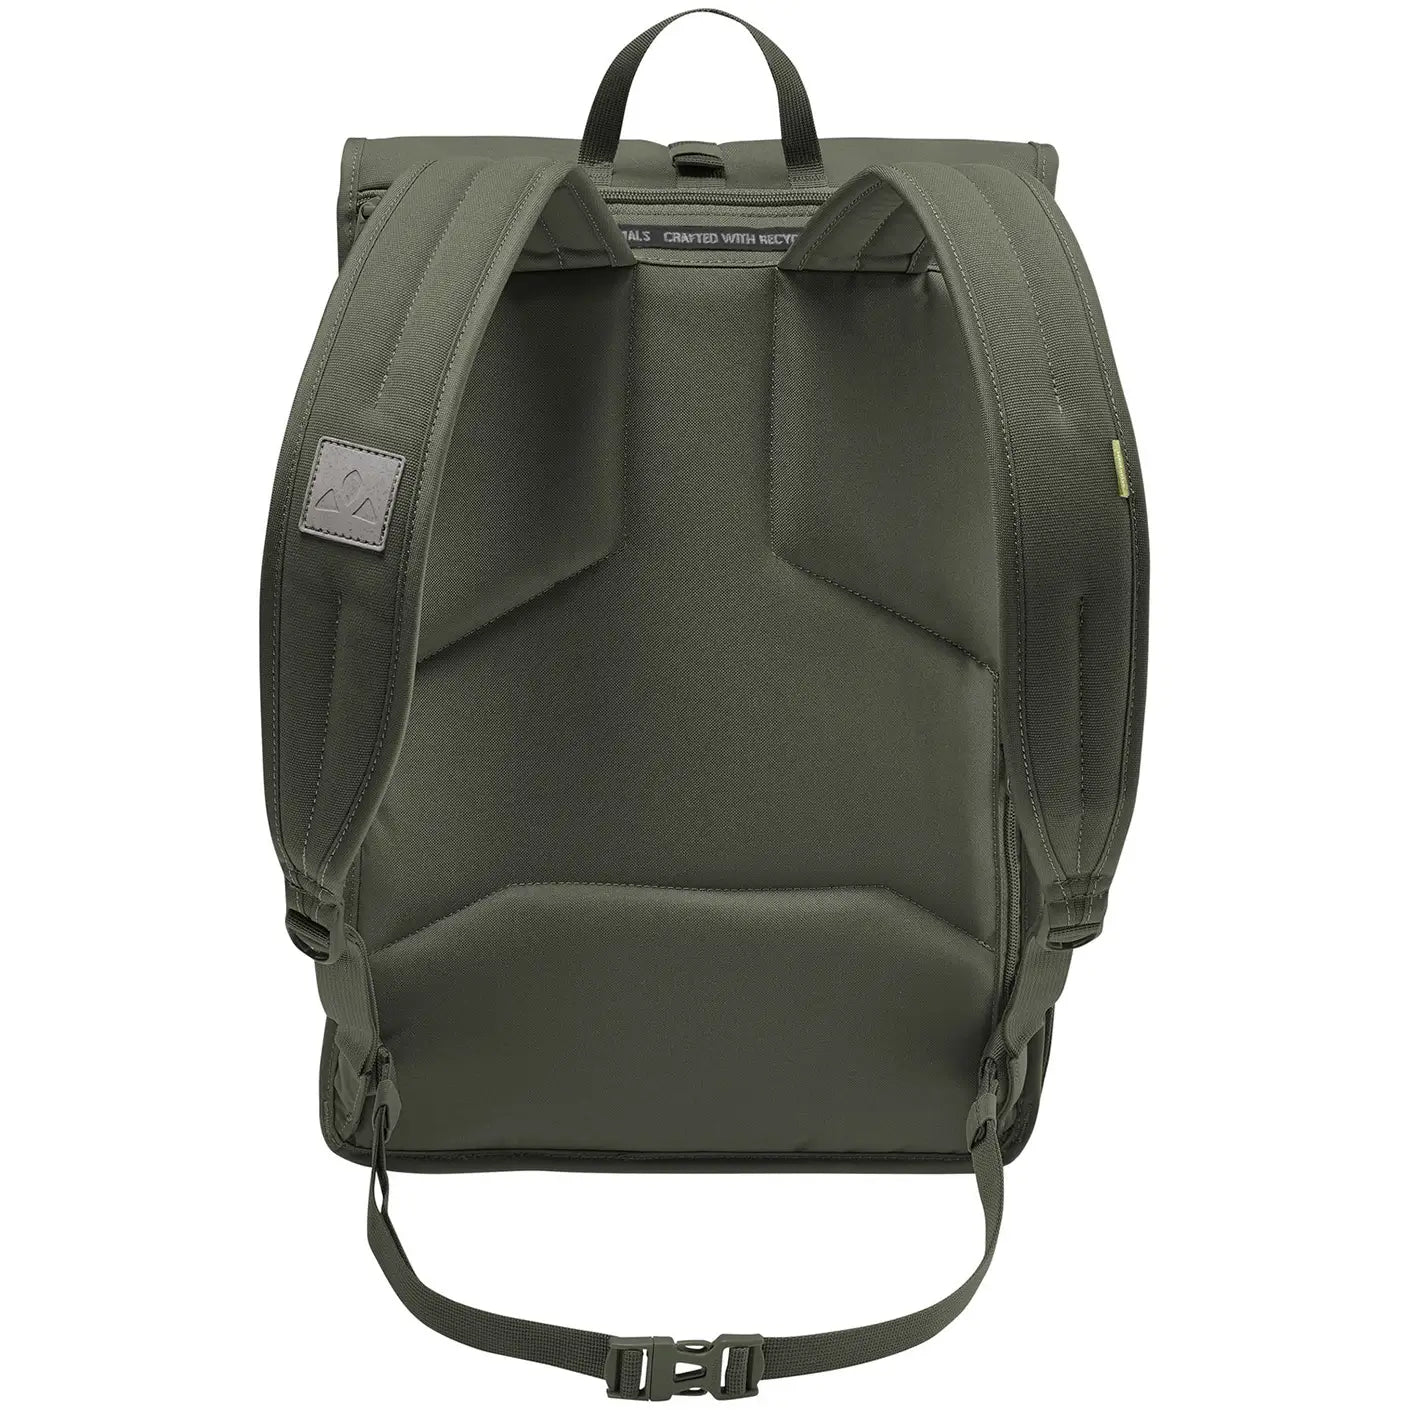 Vaude Coreway Rolltop 20 Backpack 45 cm - linen